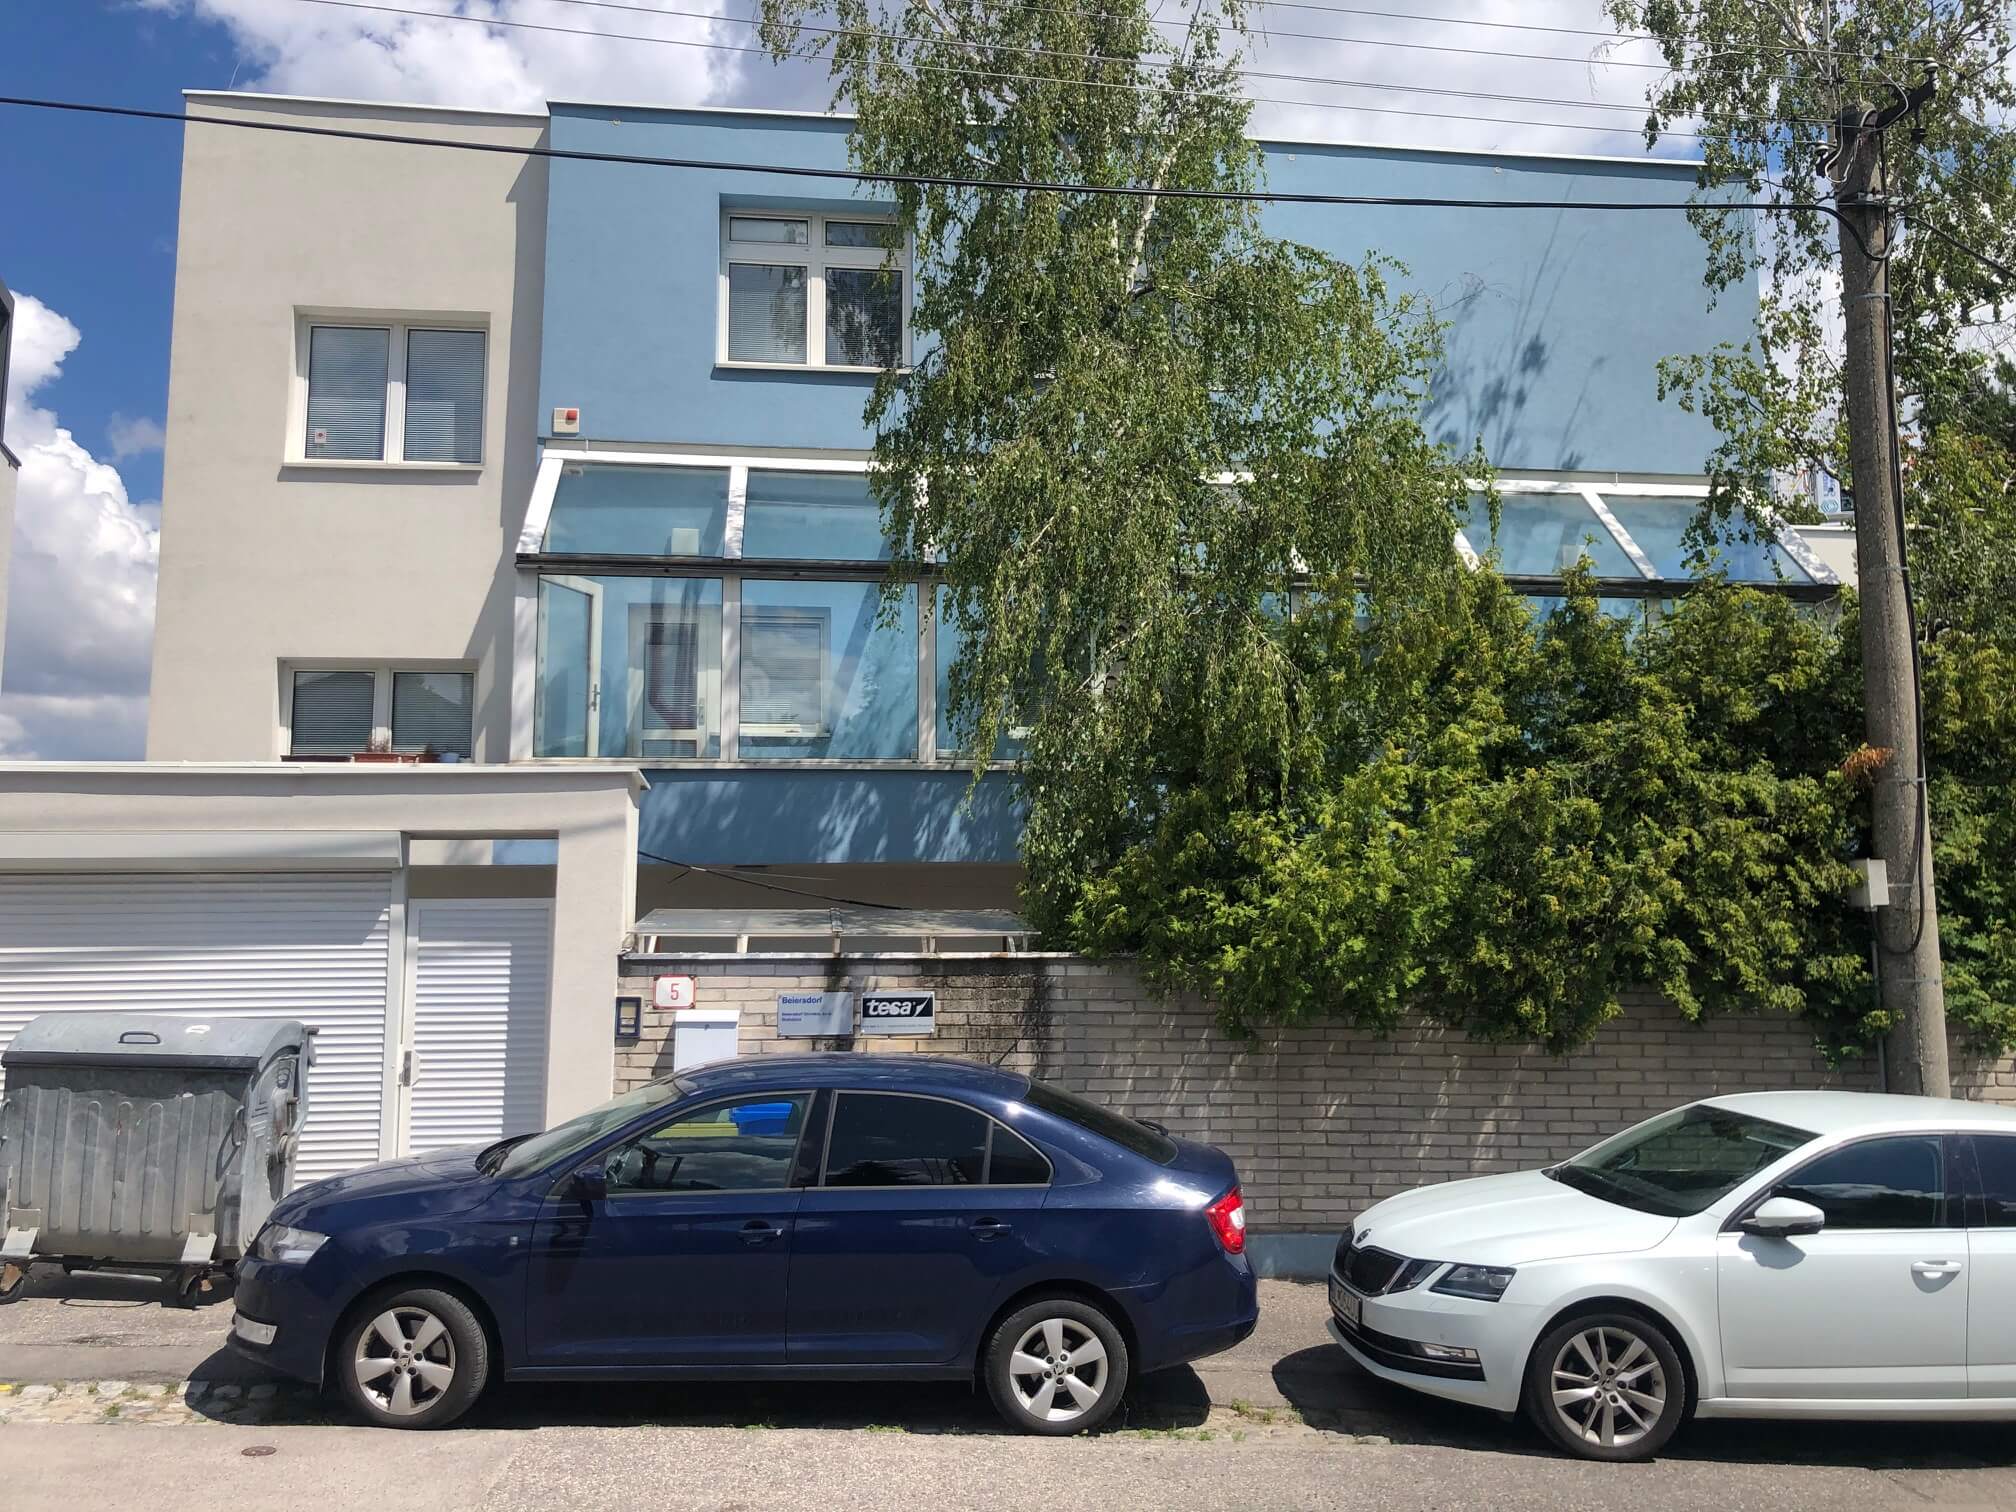 Troj podlažná budova s 10 kanceláriami, Riznerova ulica v Bratislave, nad hradom, úžitková 610m2-2